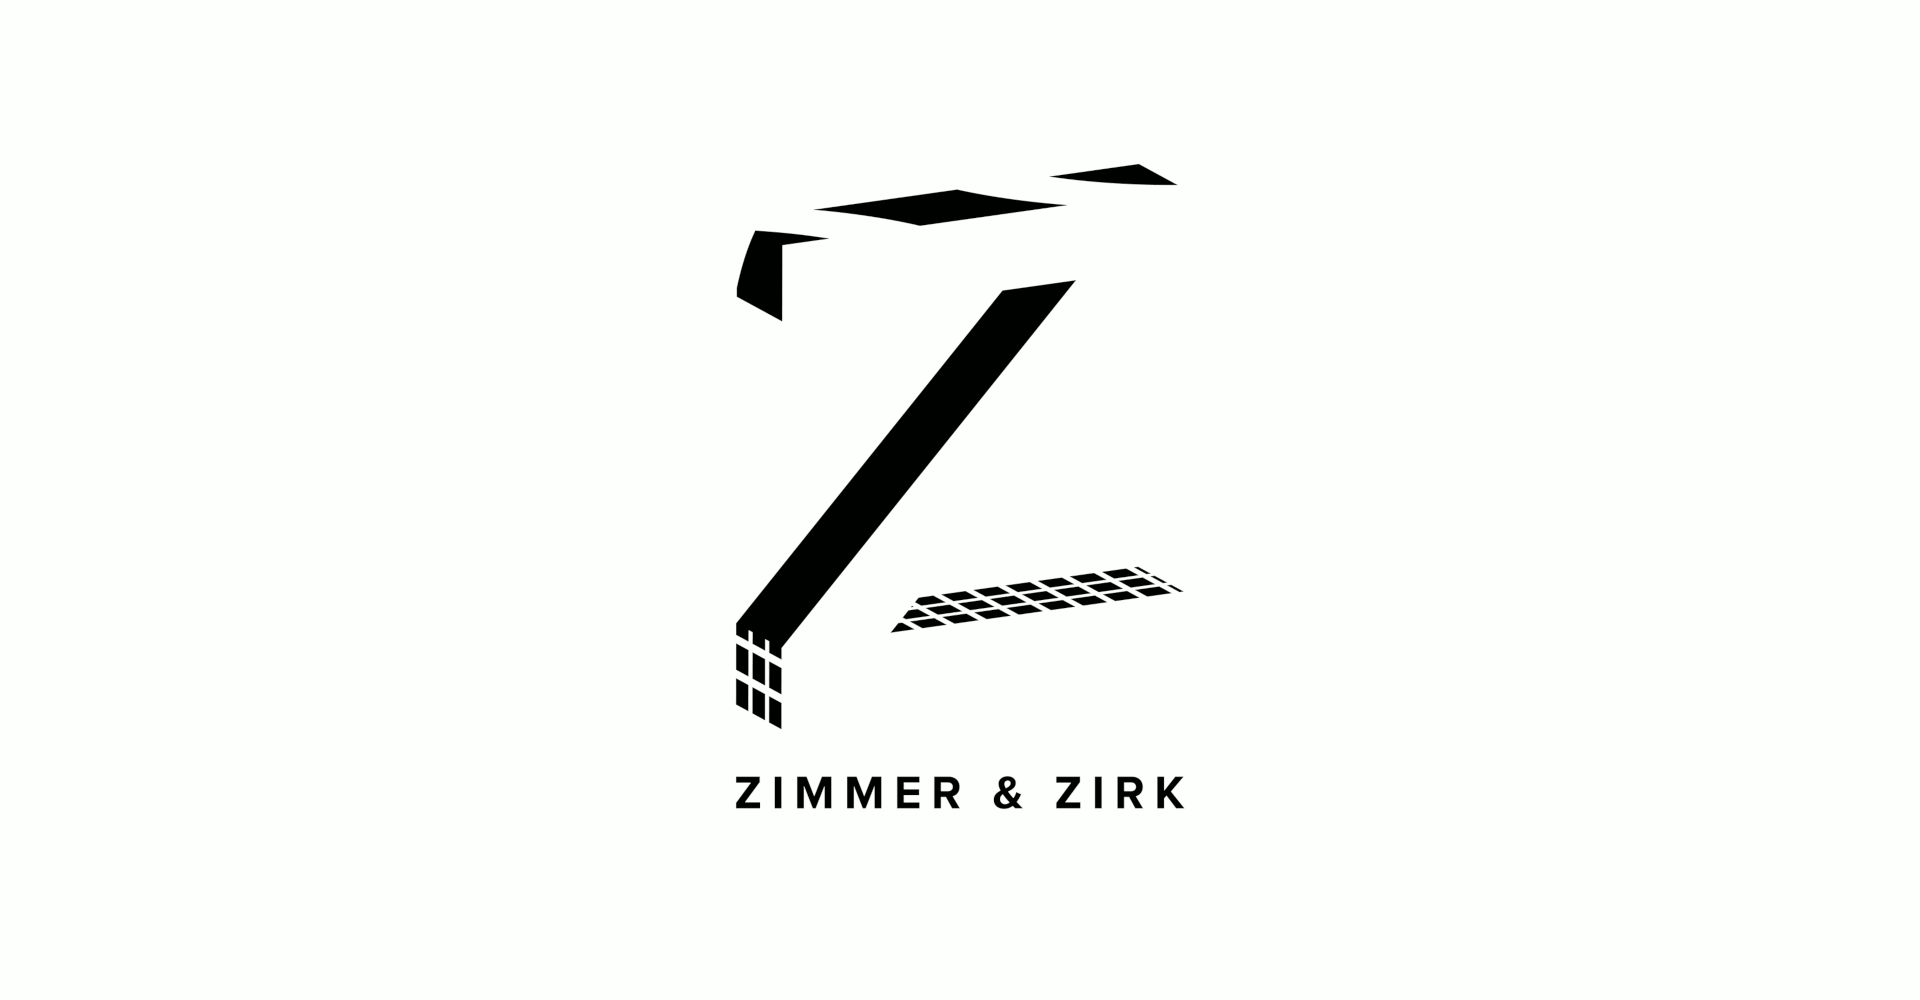 Zimmer & Zirk